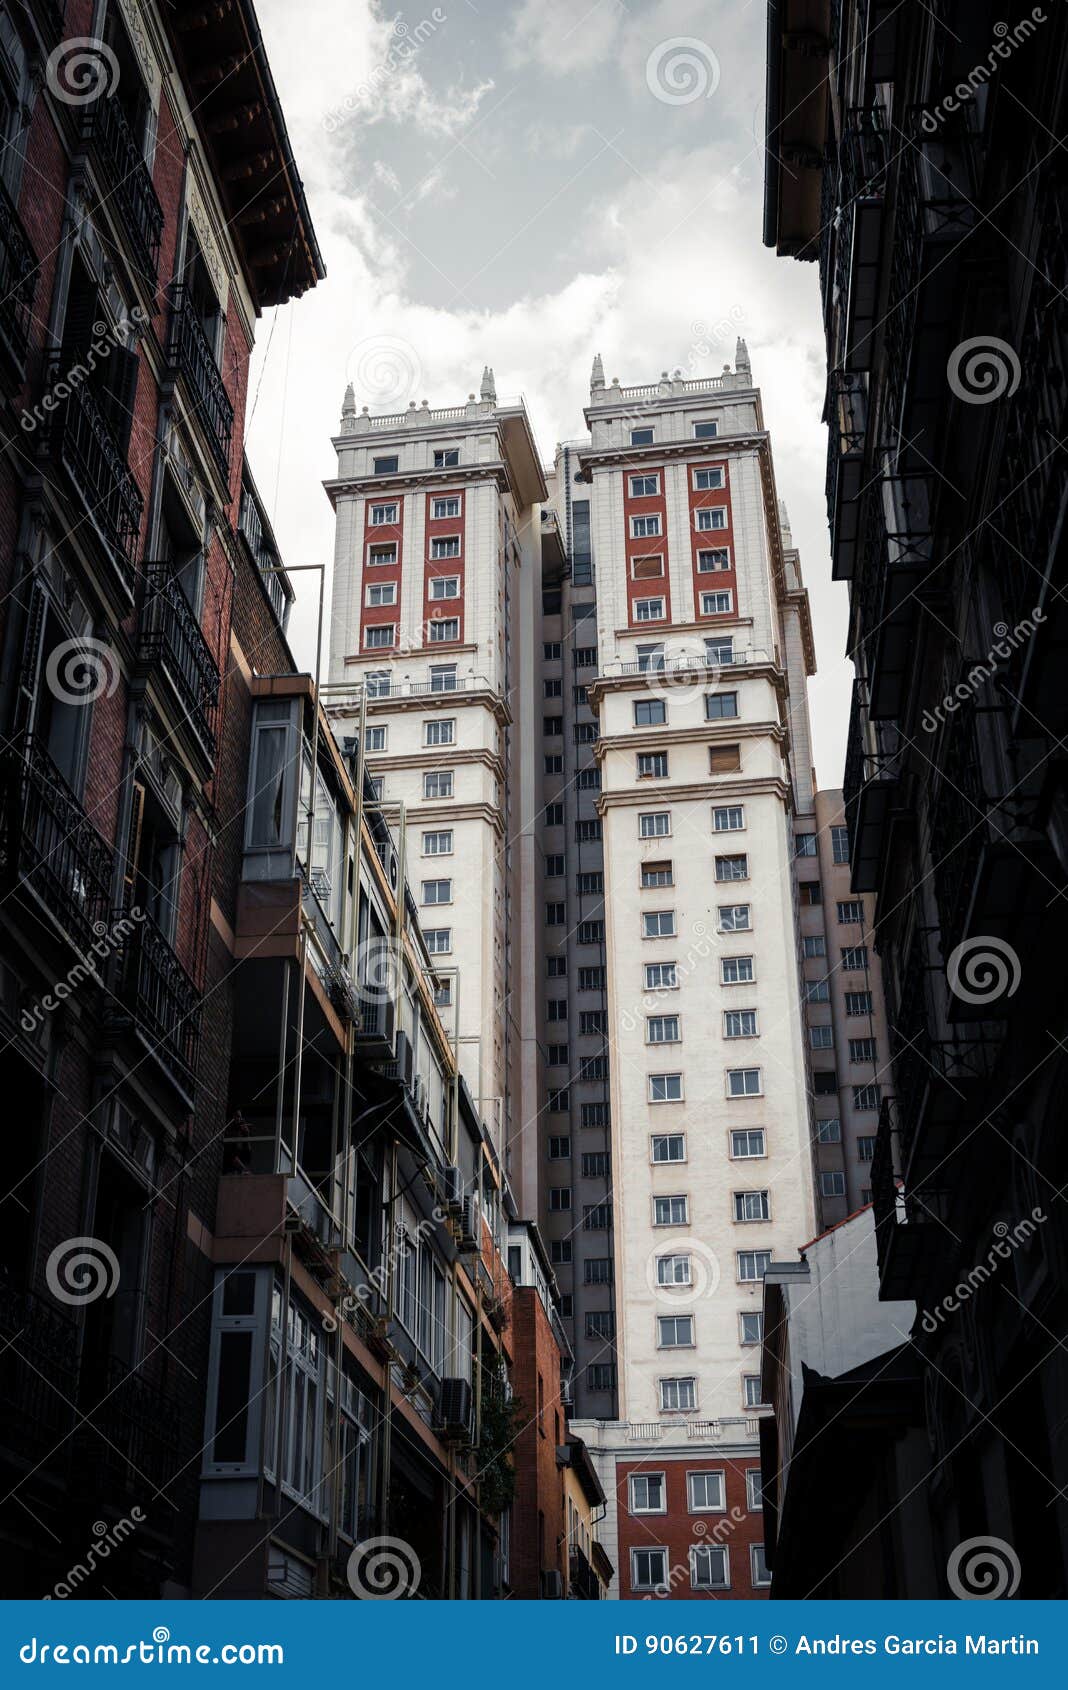 edificio espaÃÂ±a art deco skyscraper in plaza de espaÃÂ±a